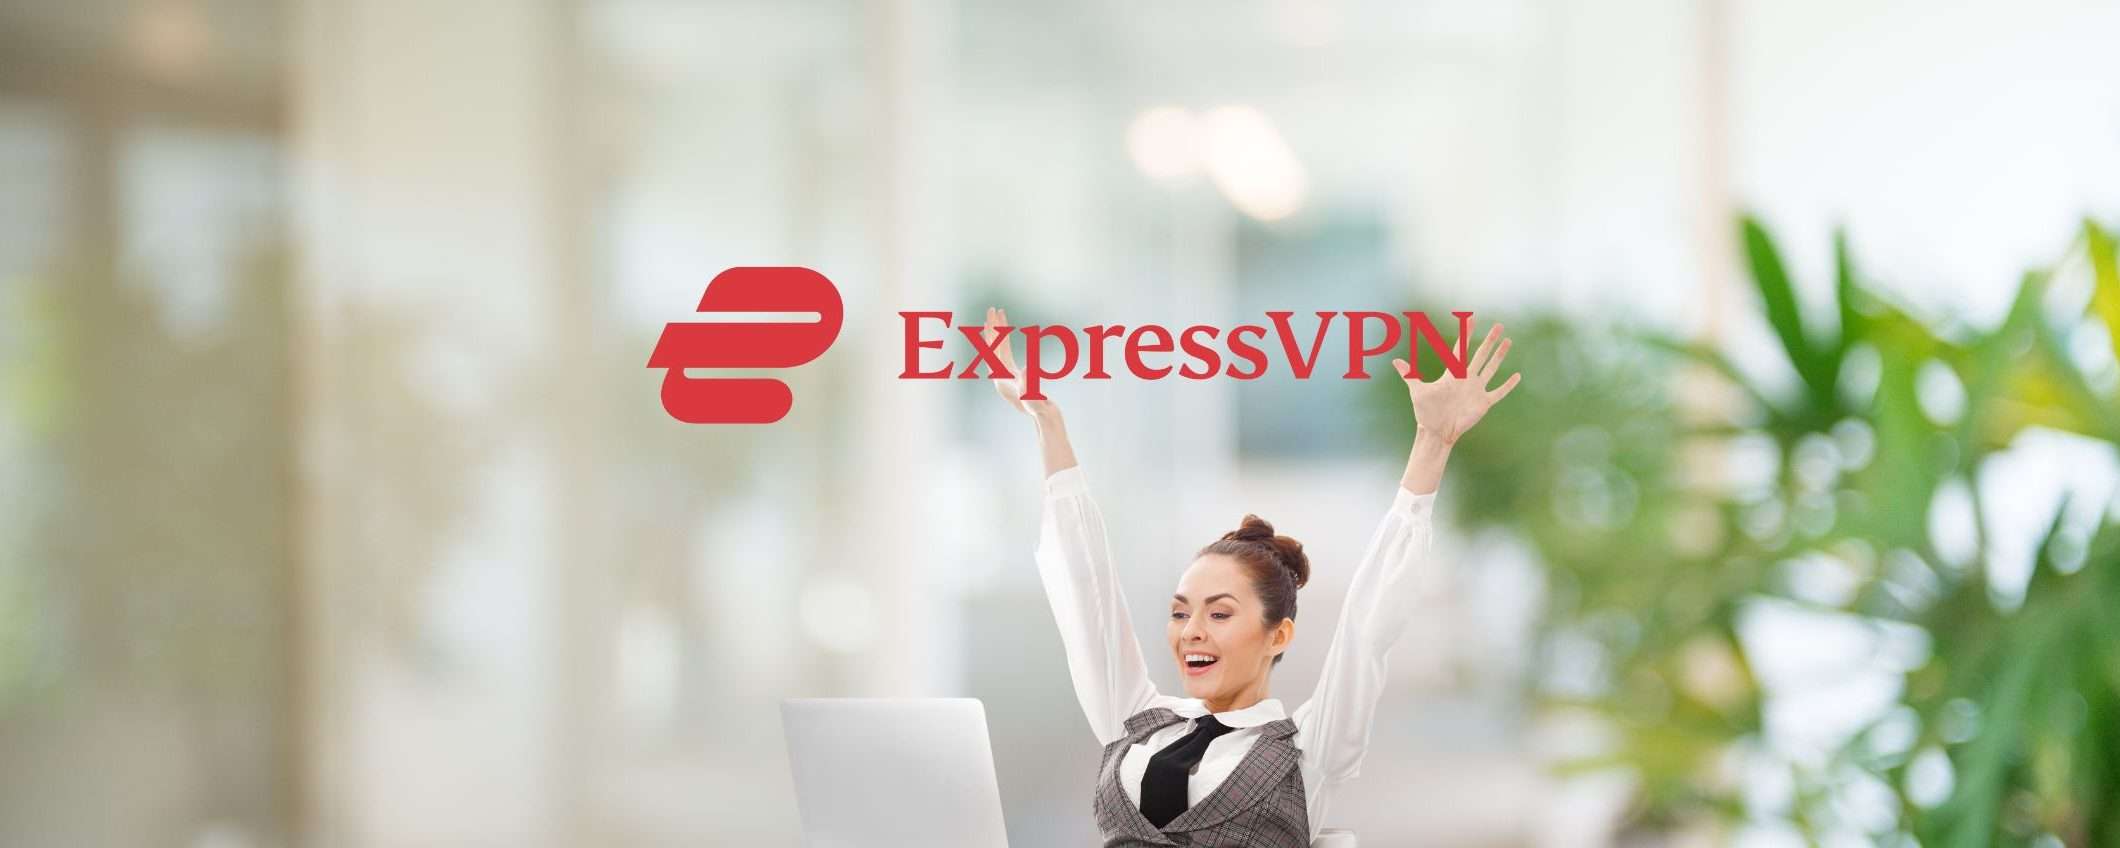 ExpressVPN: naviga sicuro con -49% e 3 mesi gratis